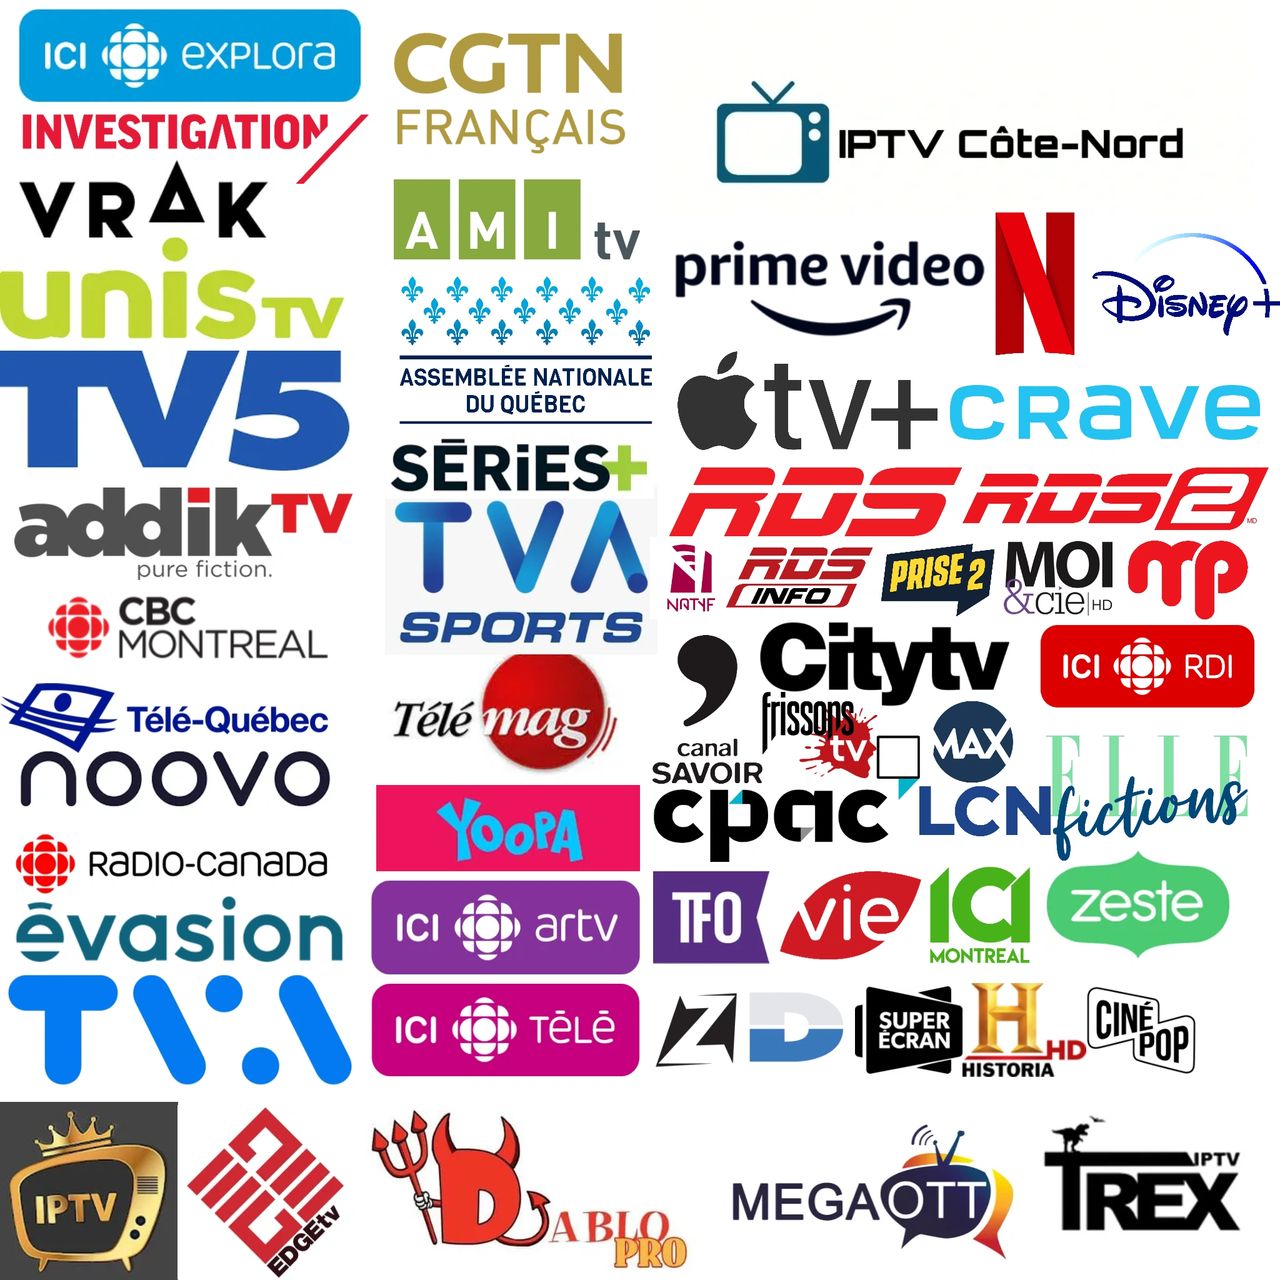 Abonnement IPTV - IPTV Quebec HD